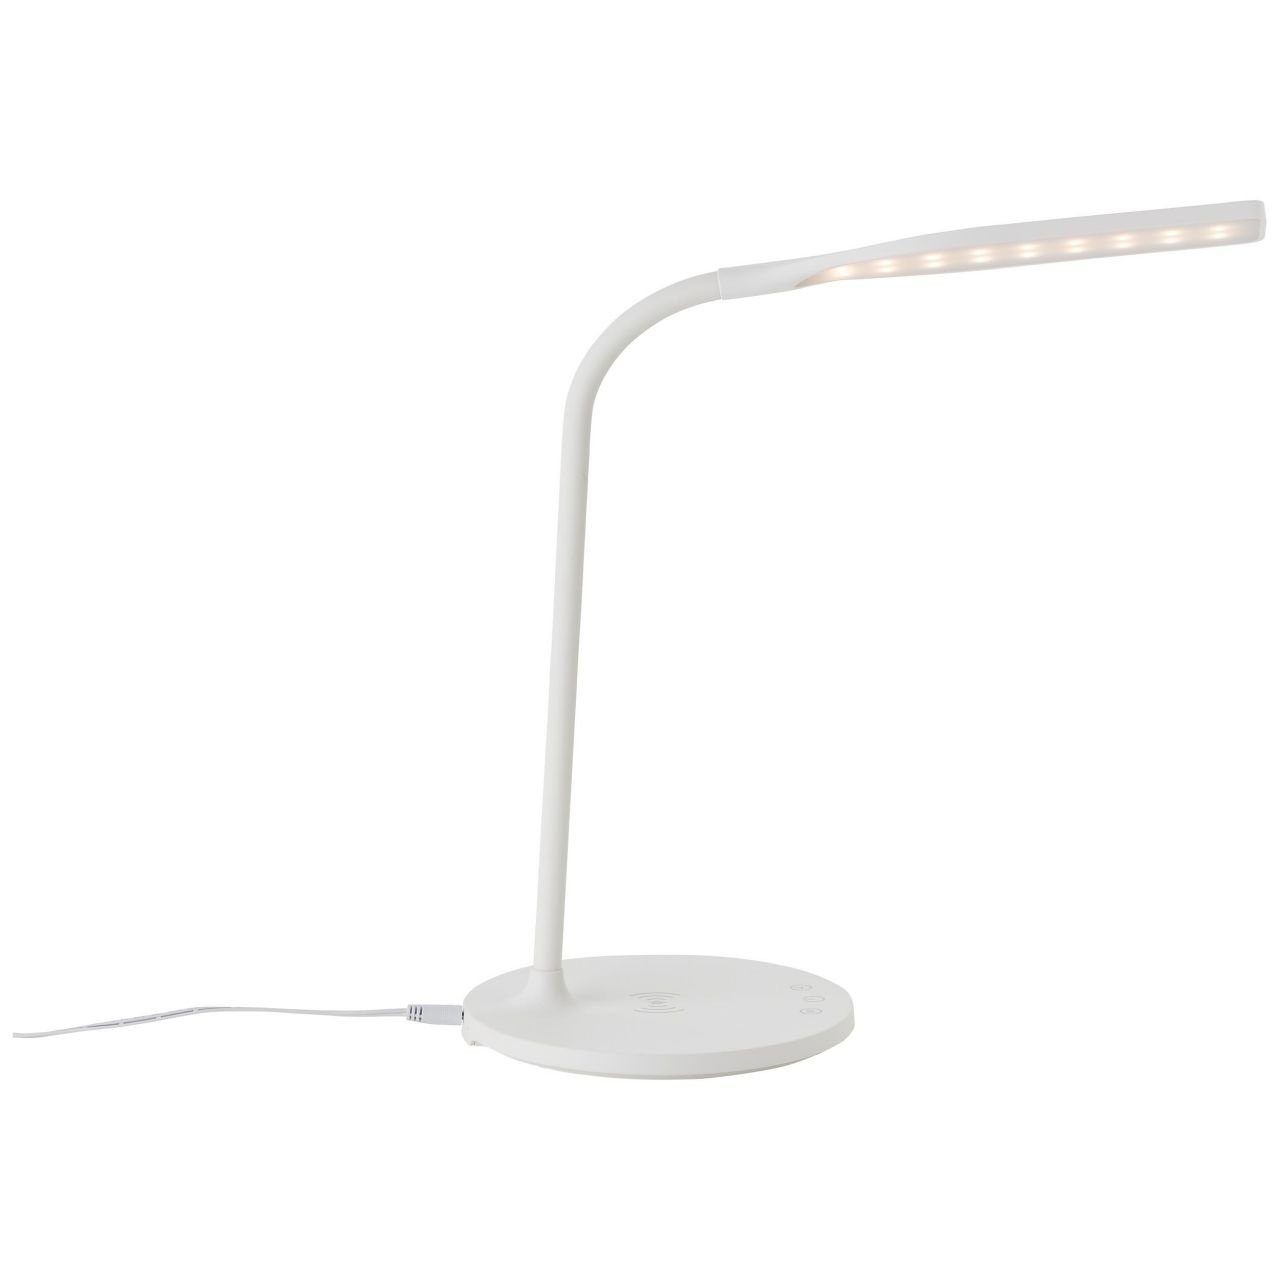 Brilliant Tischleuchte Joni, LED weiß, 3000-5400K, LED mit Lampe, Joni 1x Induktionsladeschale int Tischleuchte